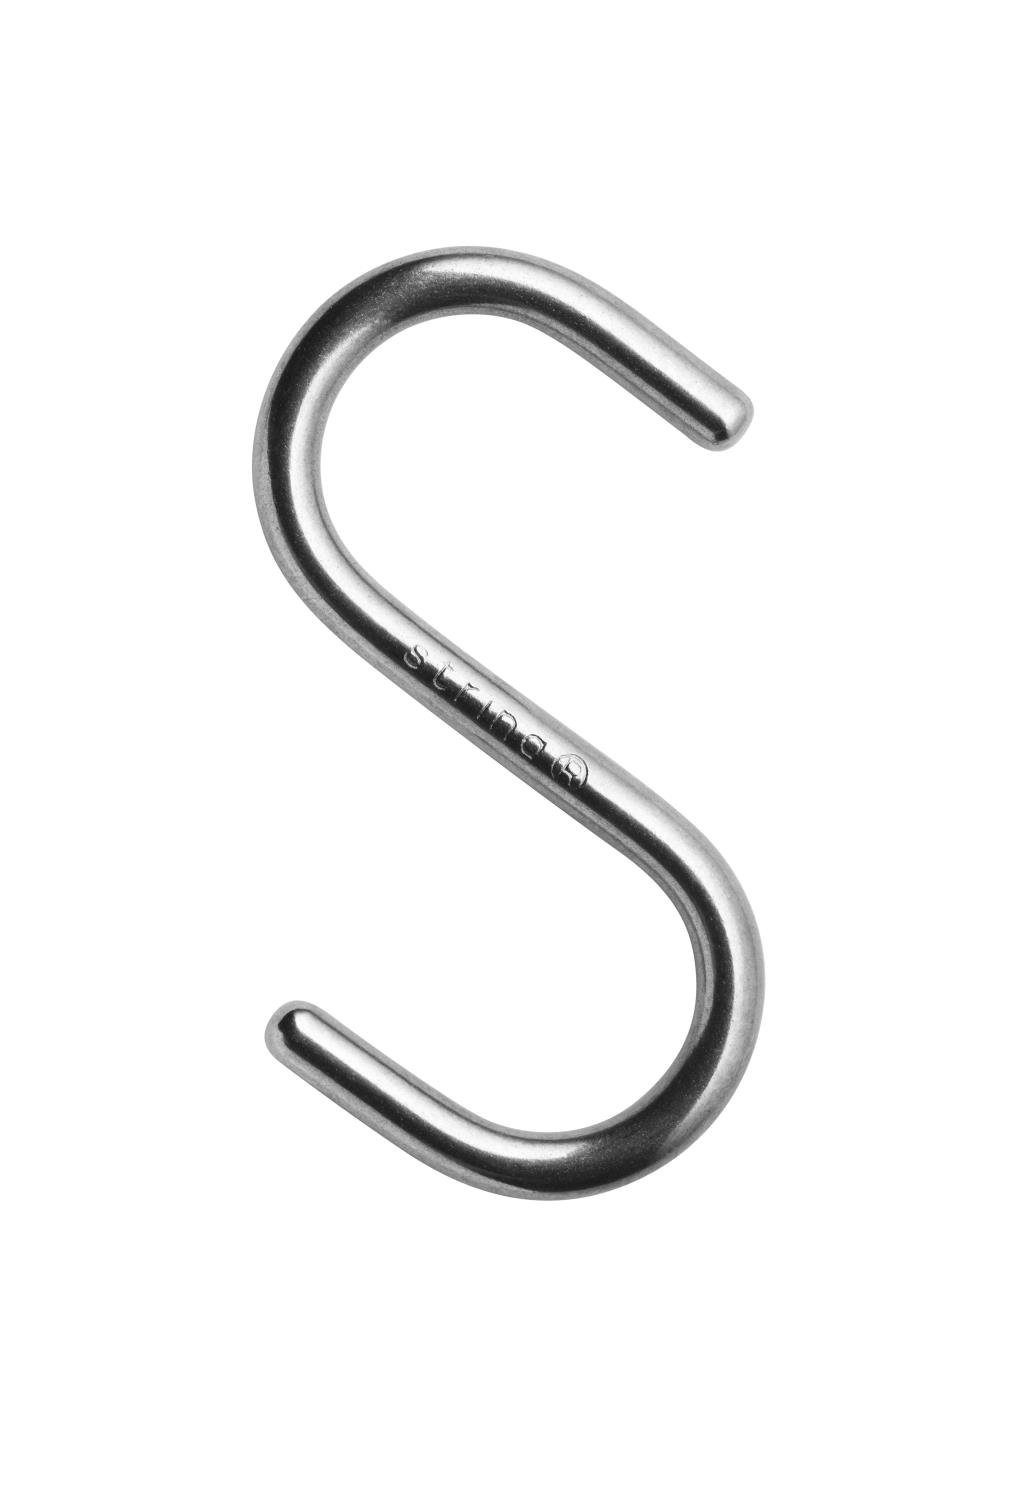 String - Metal Hook S - Stainless Steel  - 5pk